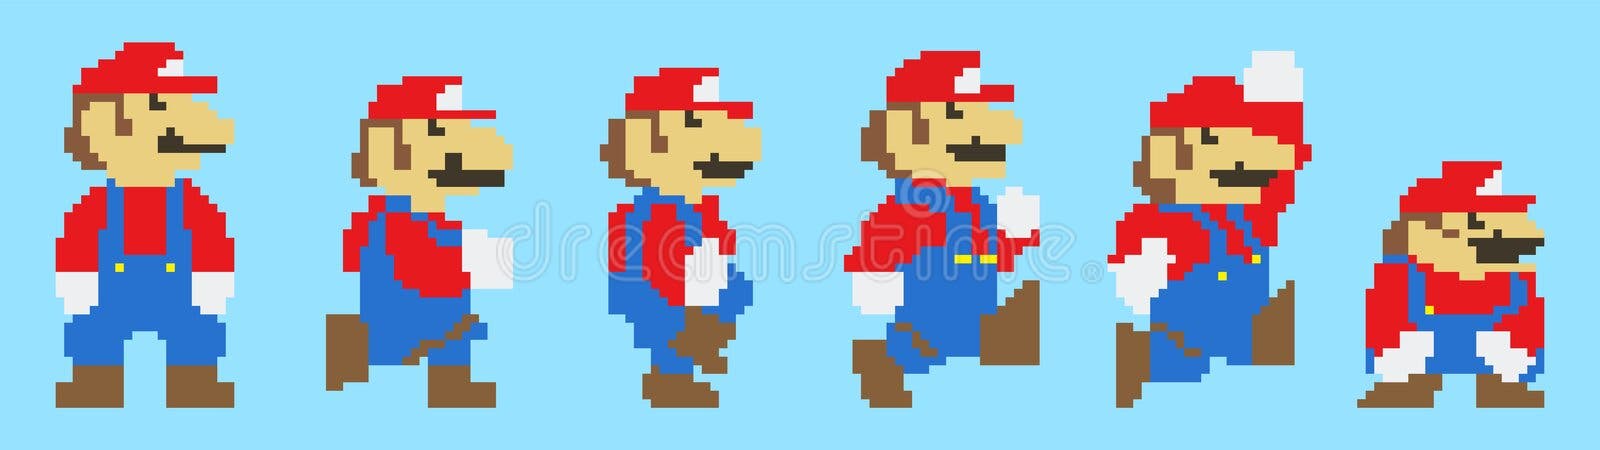 Conjunto De Itens De Super Mario Bros 3 Ilustração De Vetor De Design De  Pixel De Jogo Clássico Imagem Editorial - Ilustração de vetor,  entretenimento: 210763445